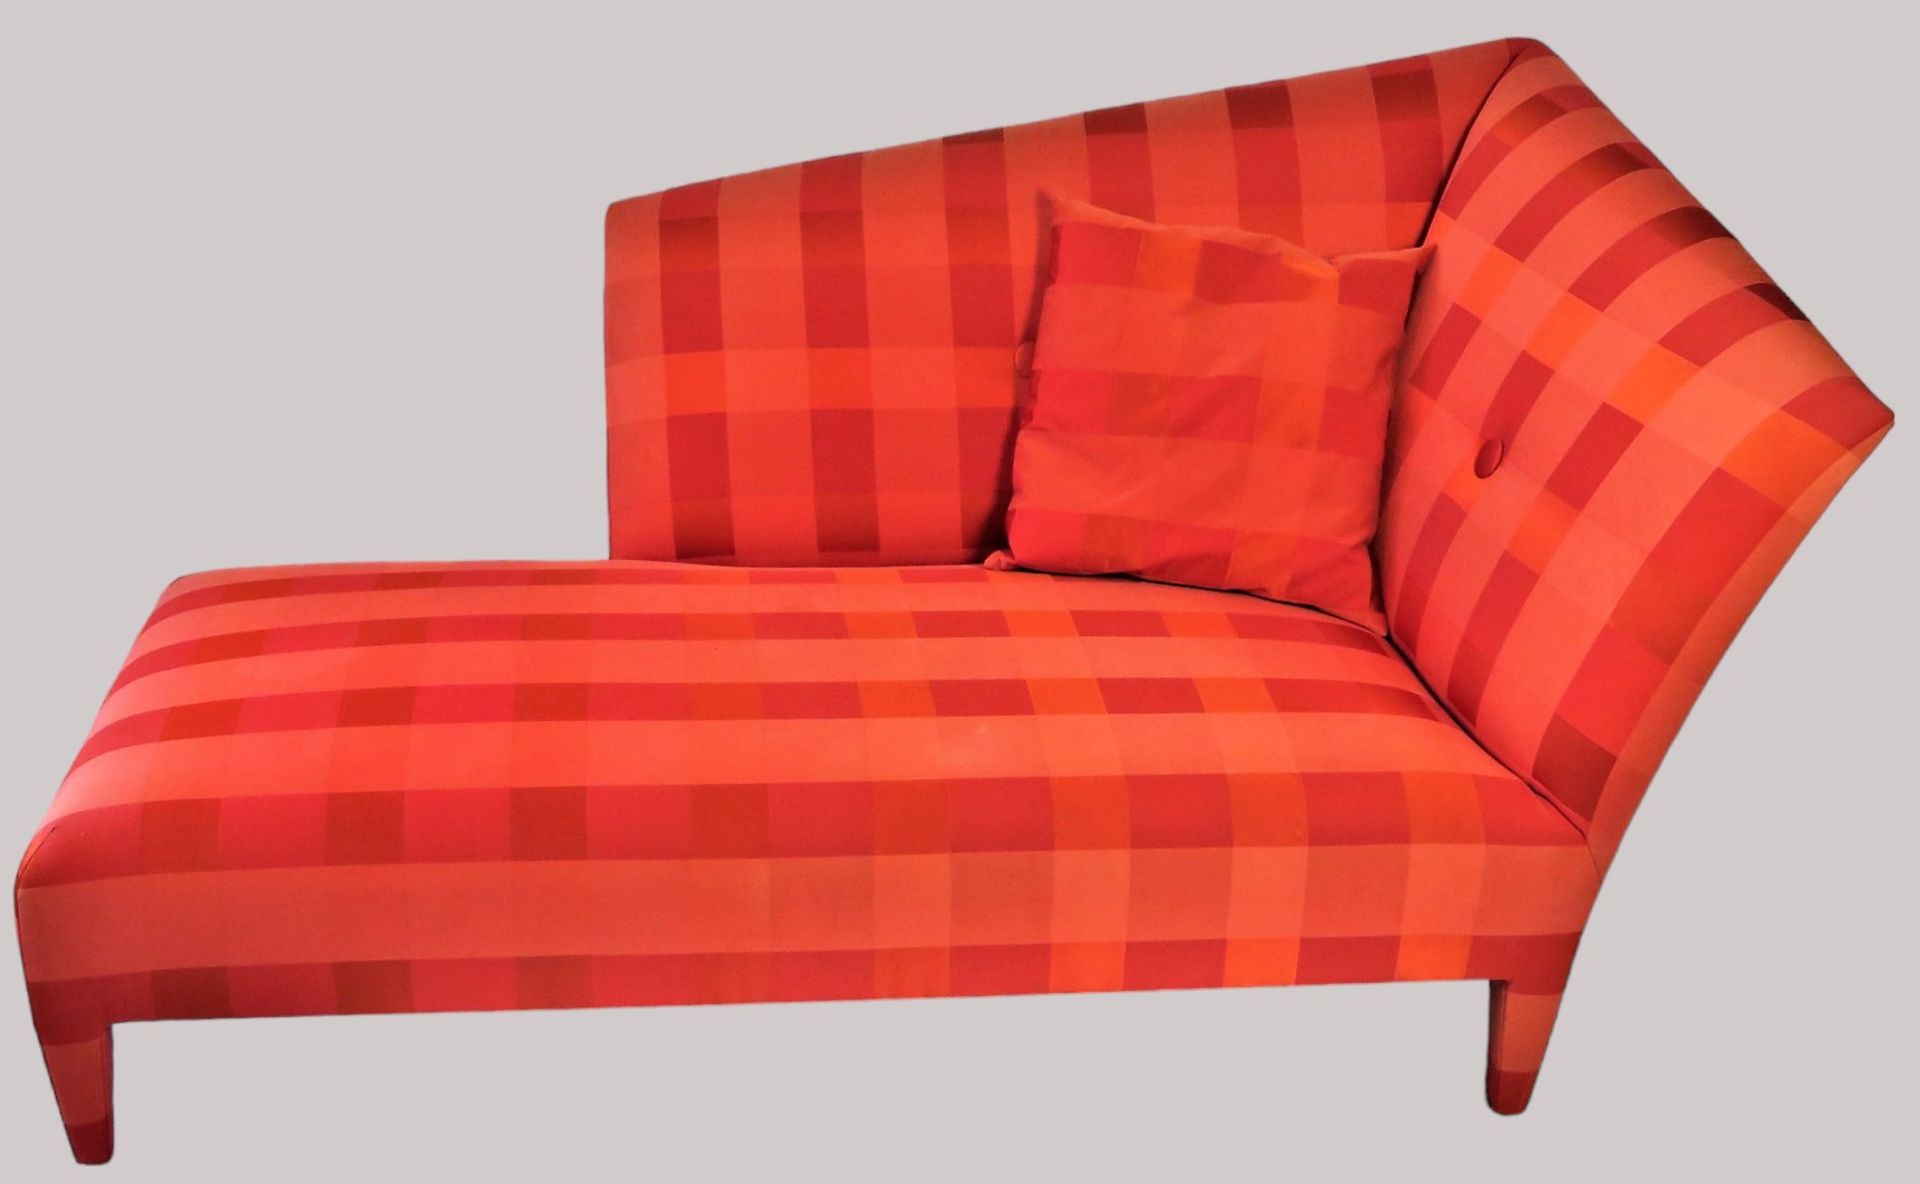 Designer Chaiselongue, Karobezug in Rot- und Orangetönen, 95 x 180 x 97 cm.